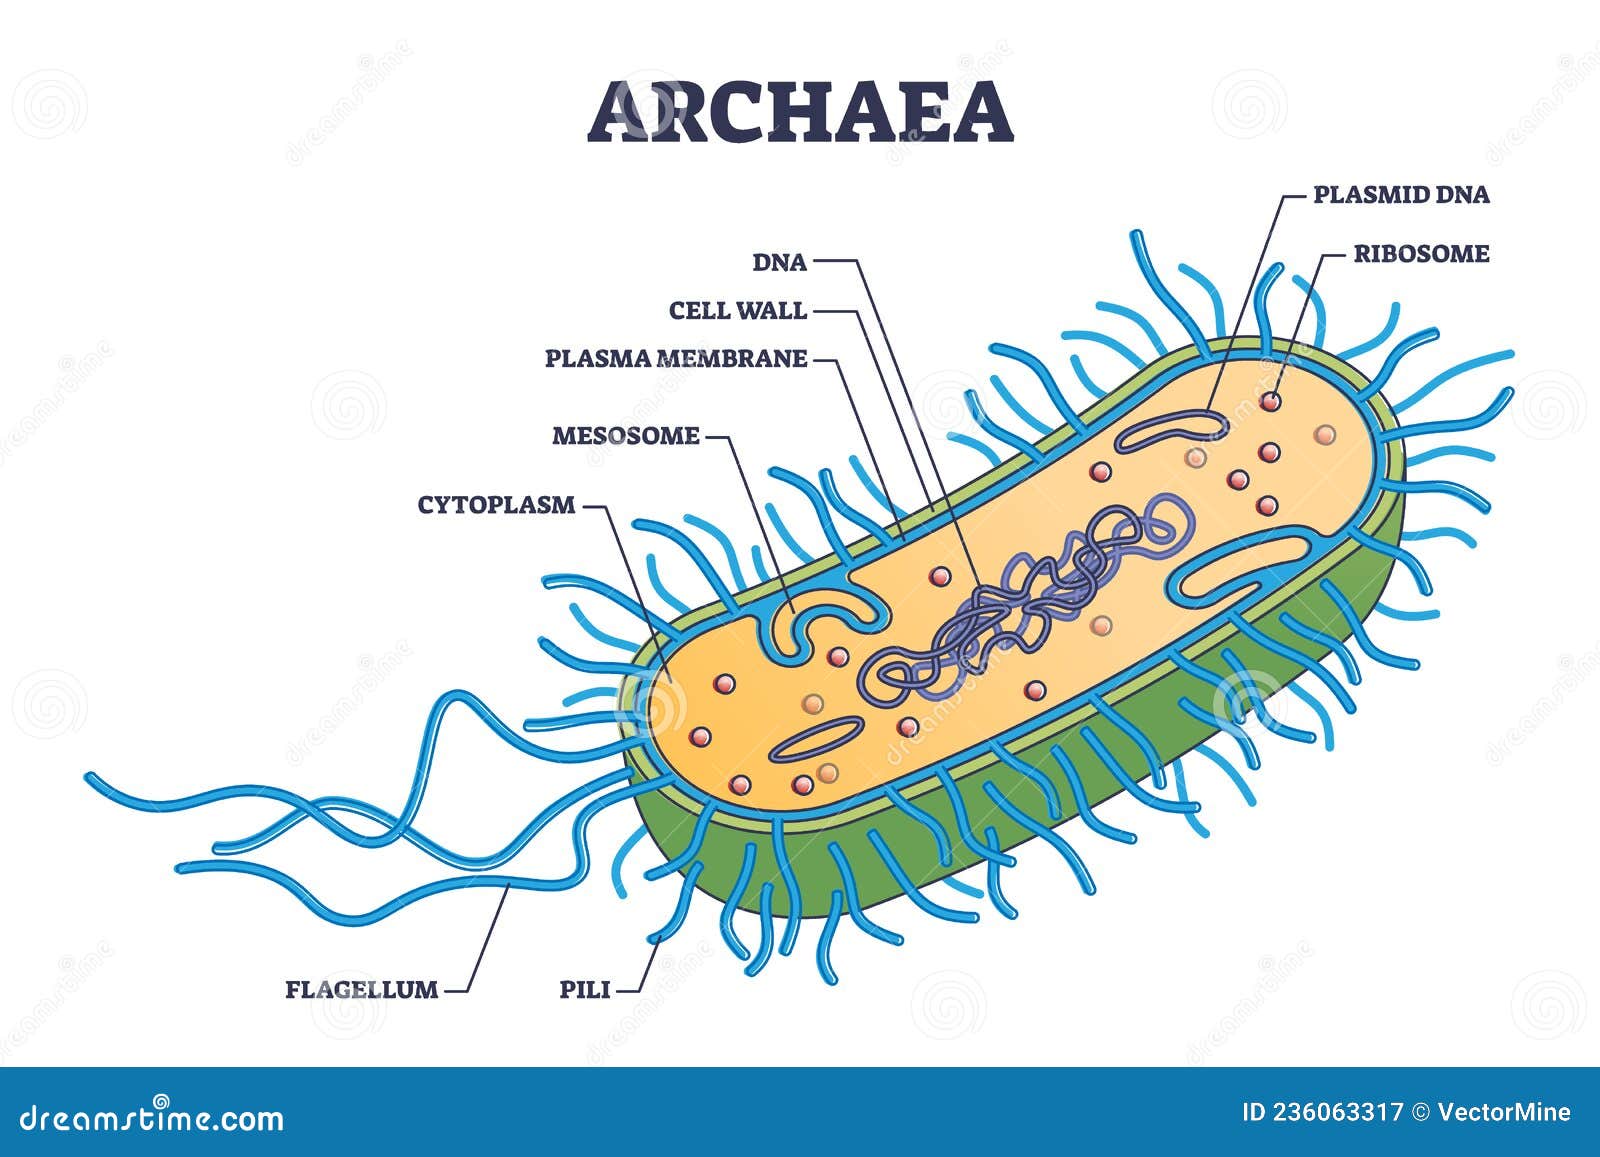 Struktur Archaebacteria